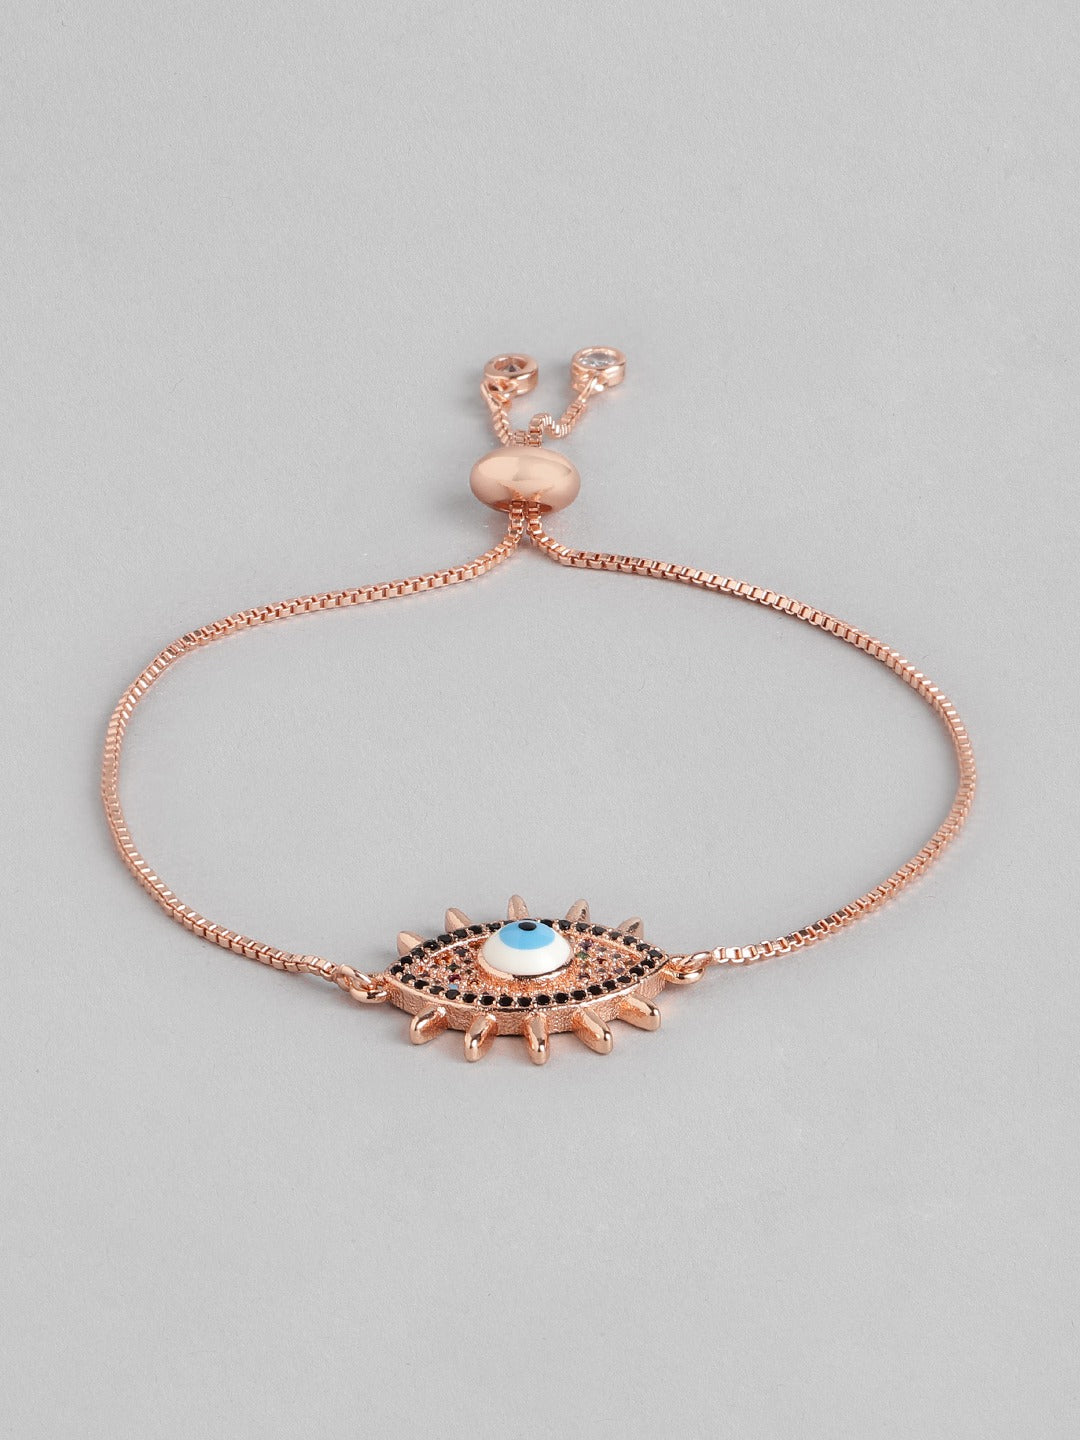 Blueberry rose gold plated Evil eye chain bracelet